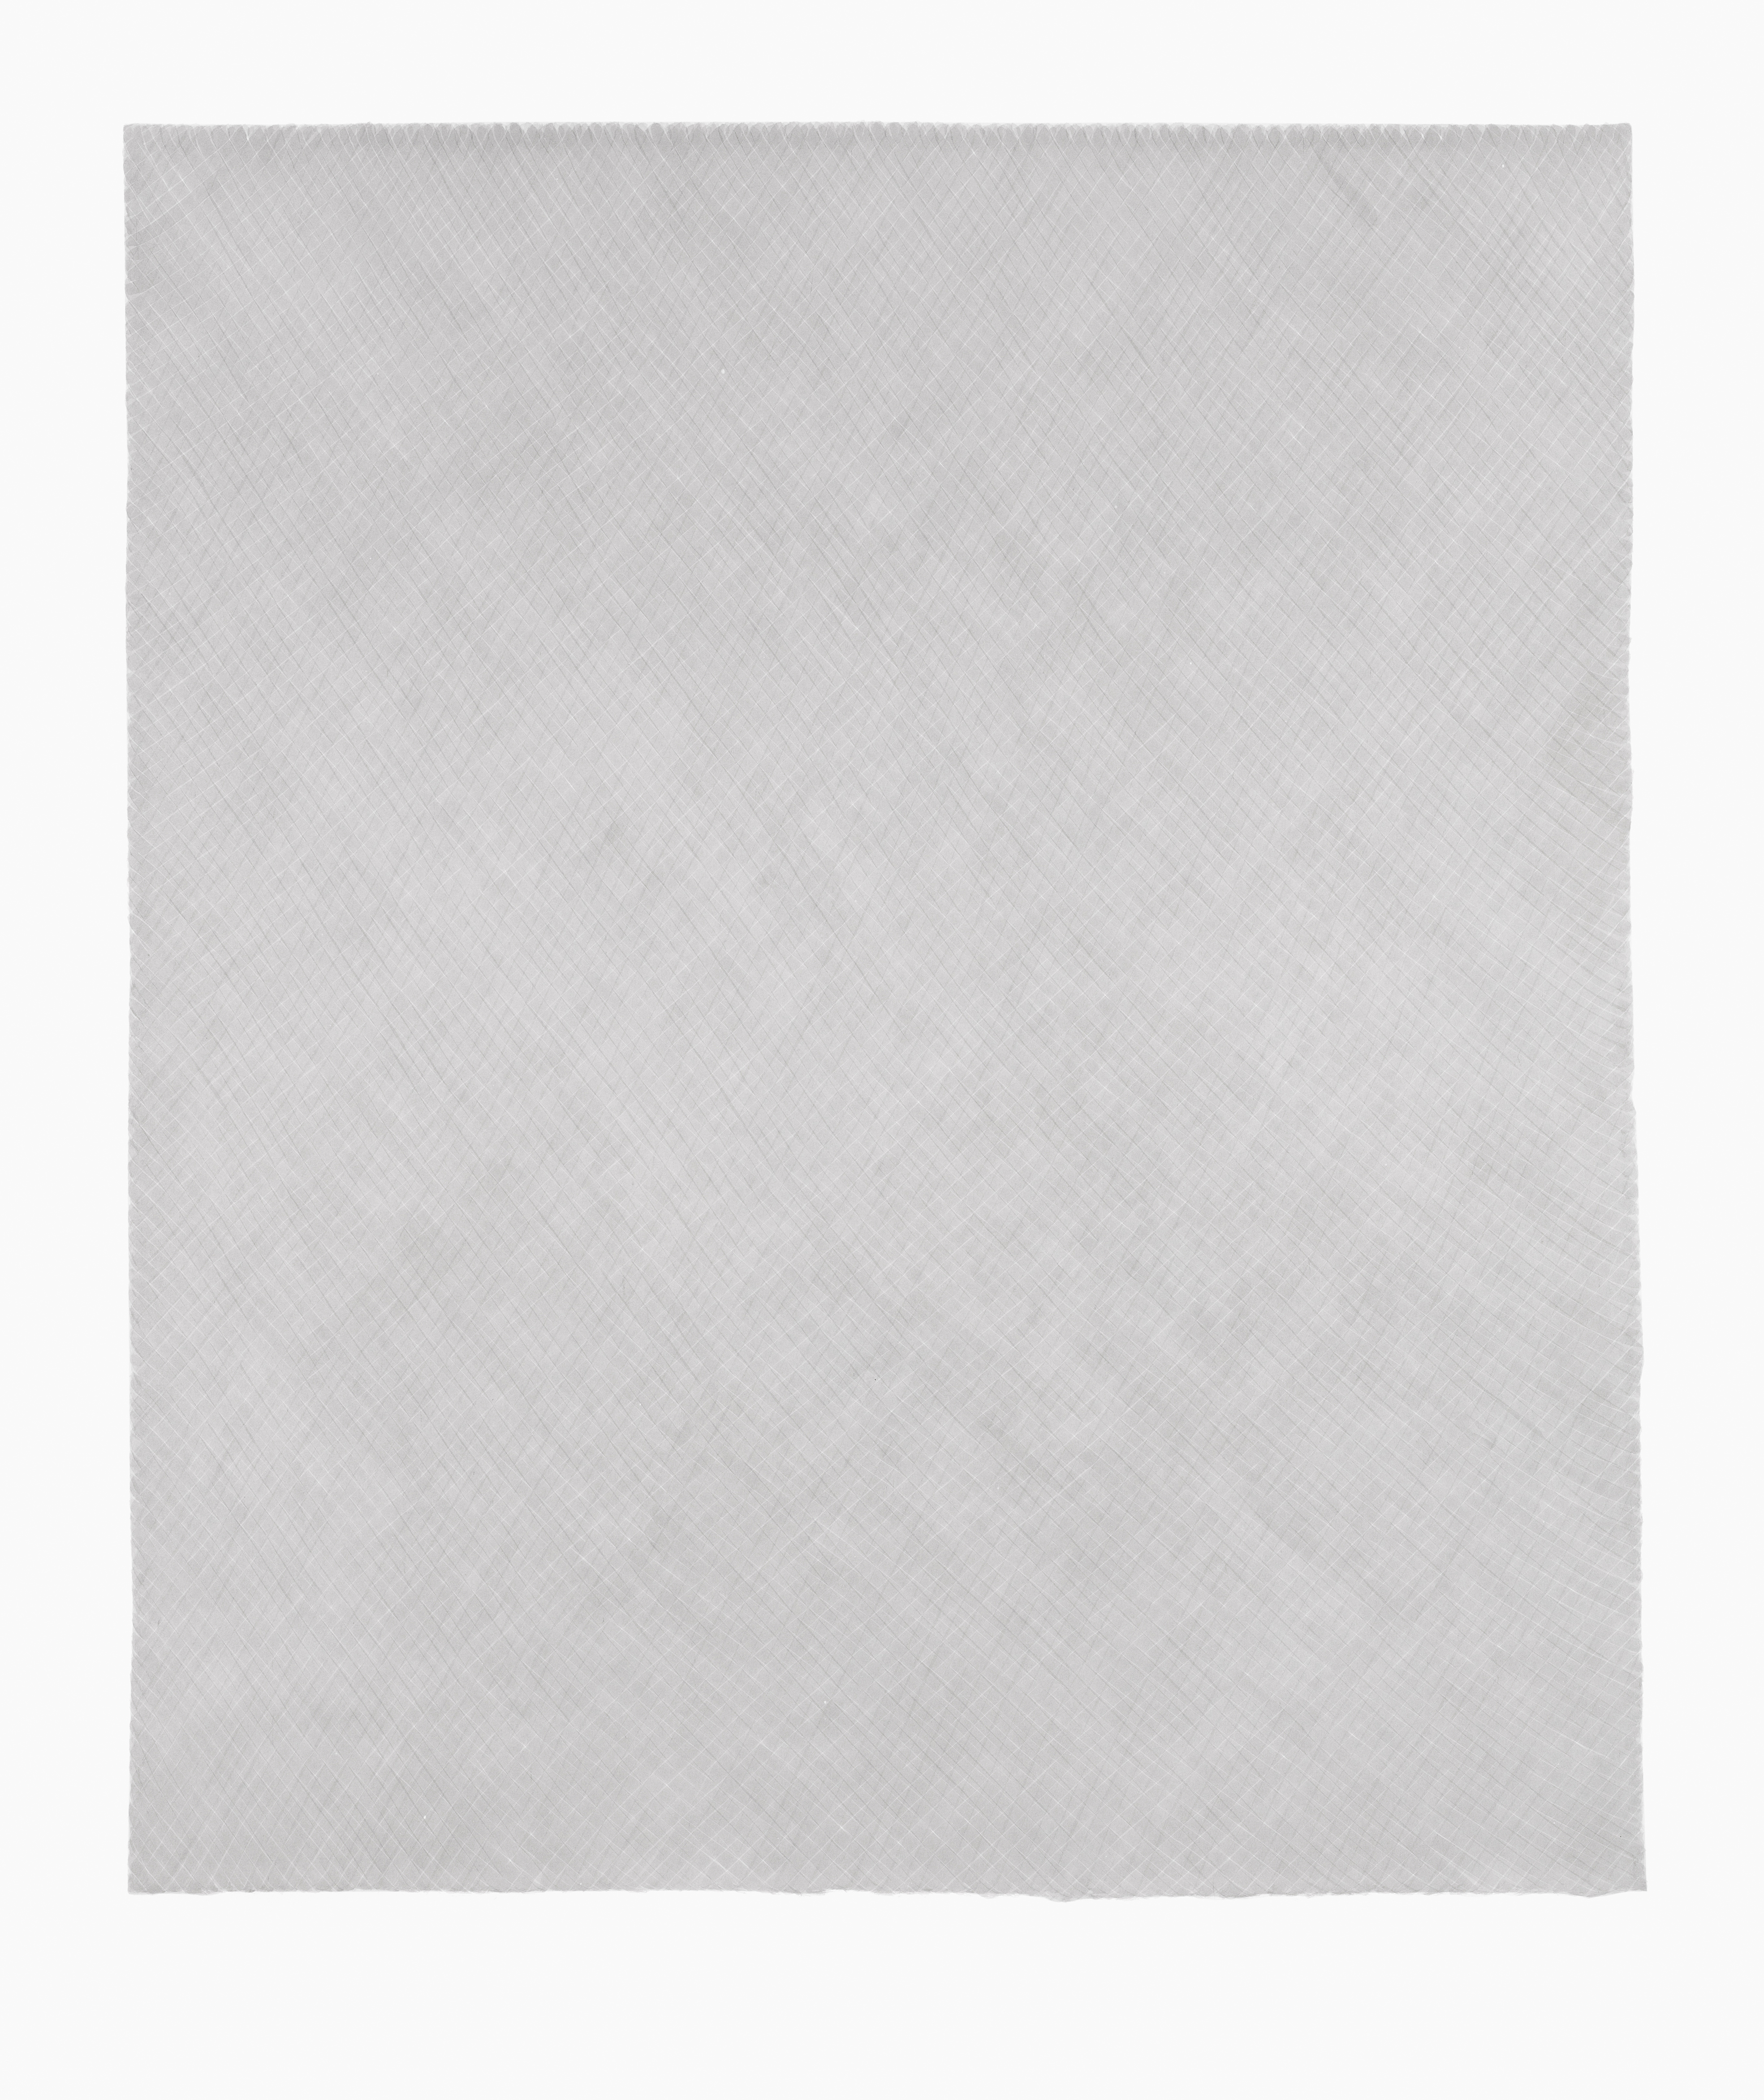 LUISE VON ROHDEN Zeichnung (dddd d/l 13/18), 2018, Tusche auf Papier, 78 x 58 cm